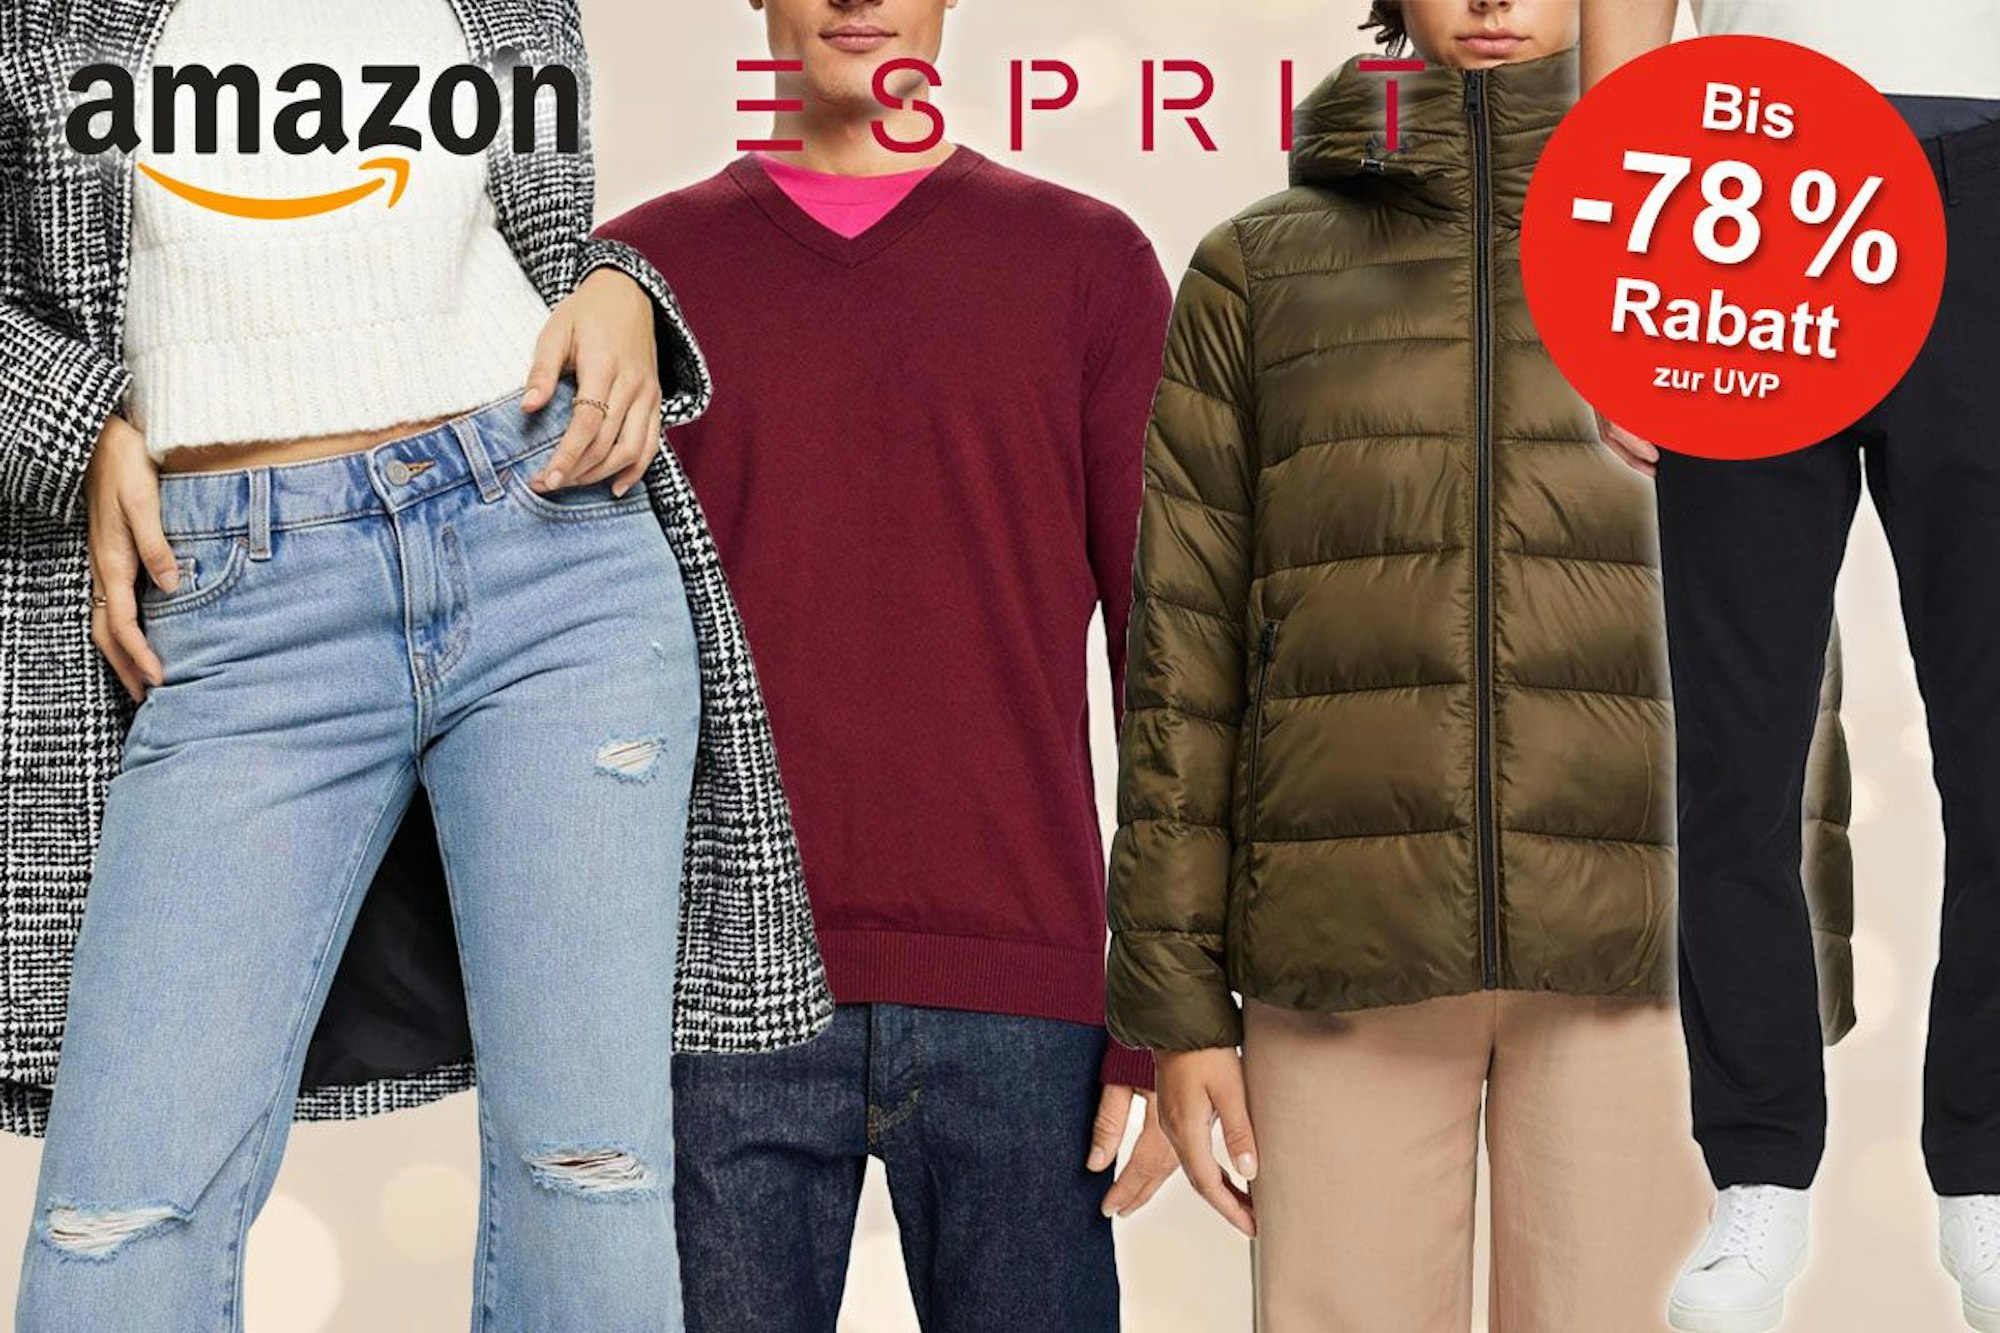 Esprit Mode für Damen und Herren, Jeans Pullover, Jacke mit Esprit und Amazon Logo.